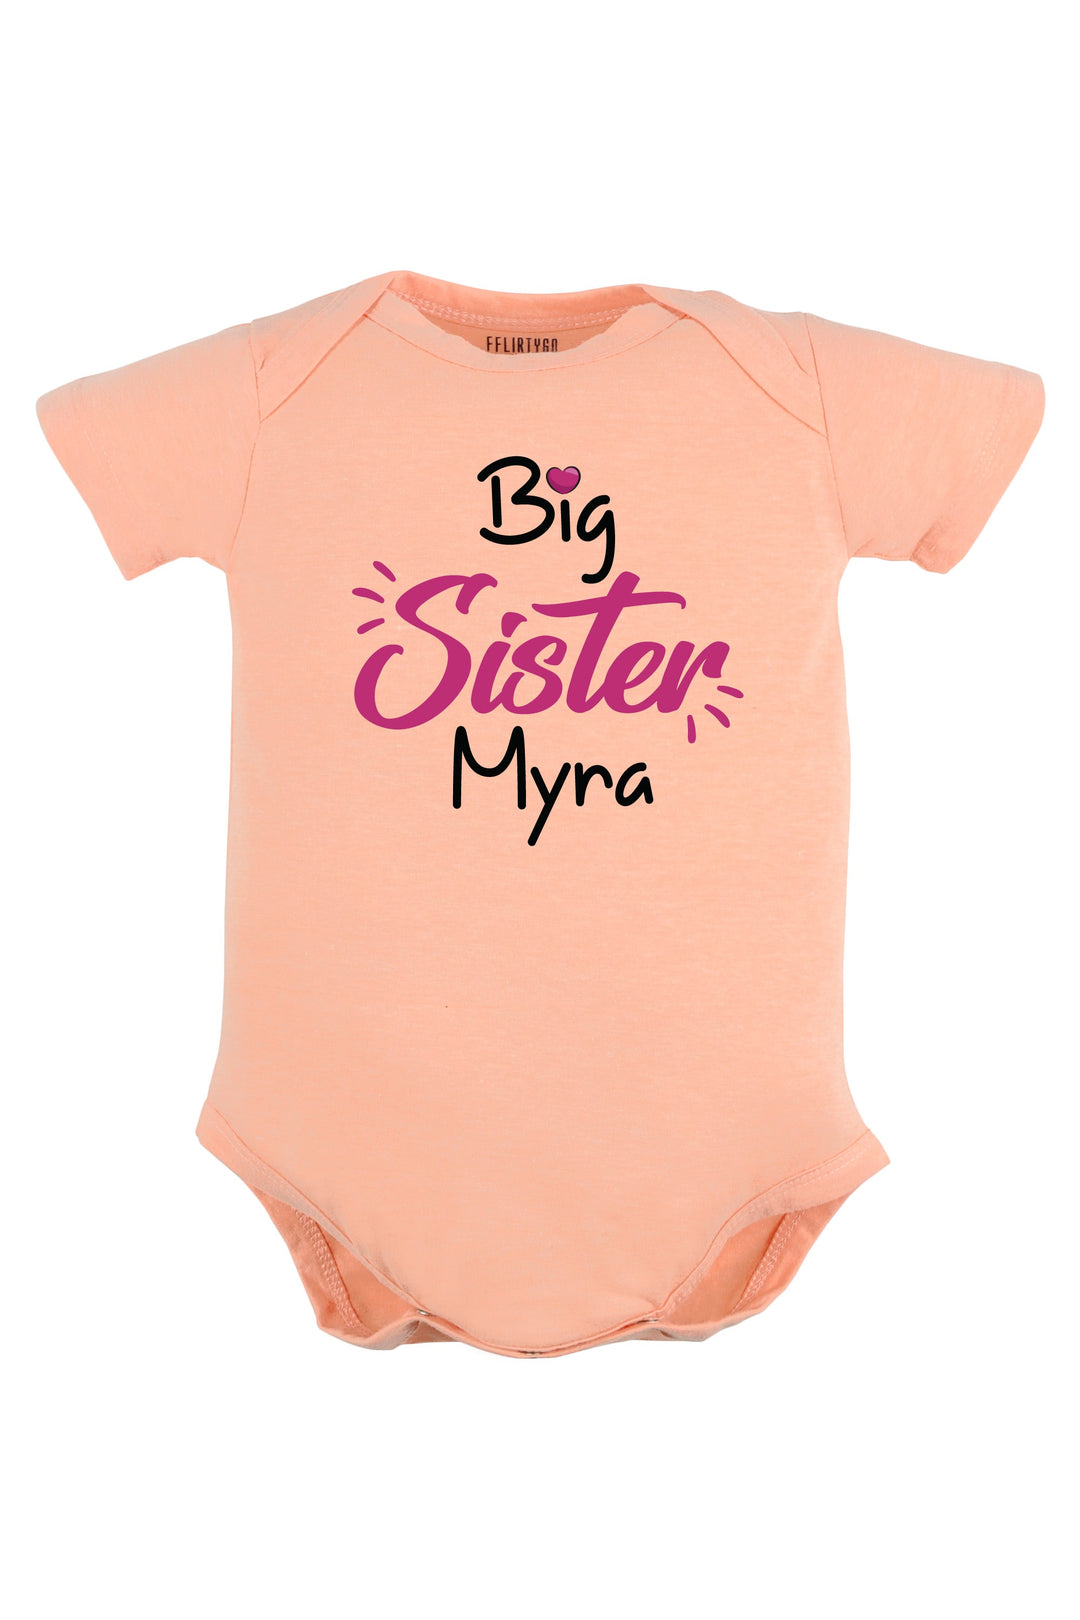 Big Sister Baby Romper | Onesies w/ Custom Name